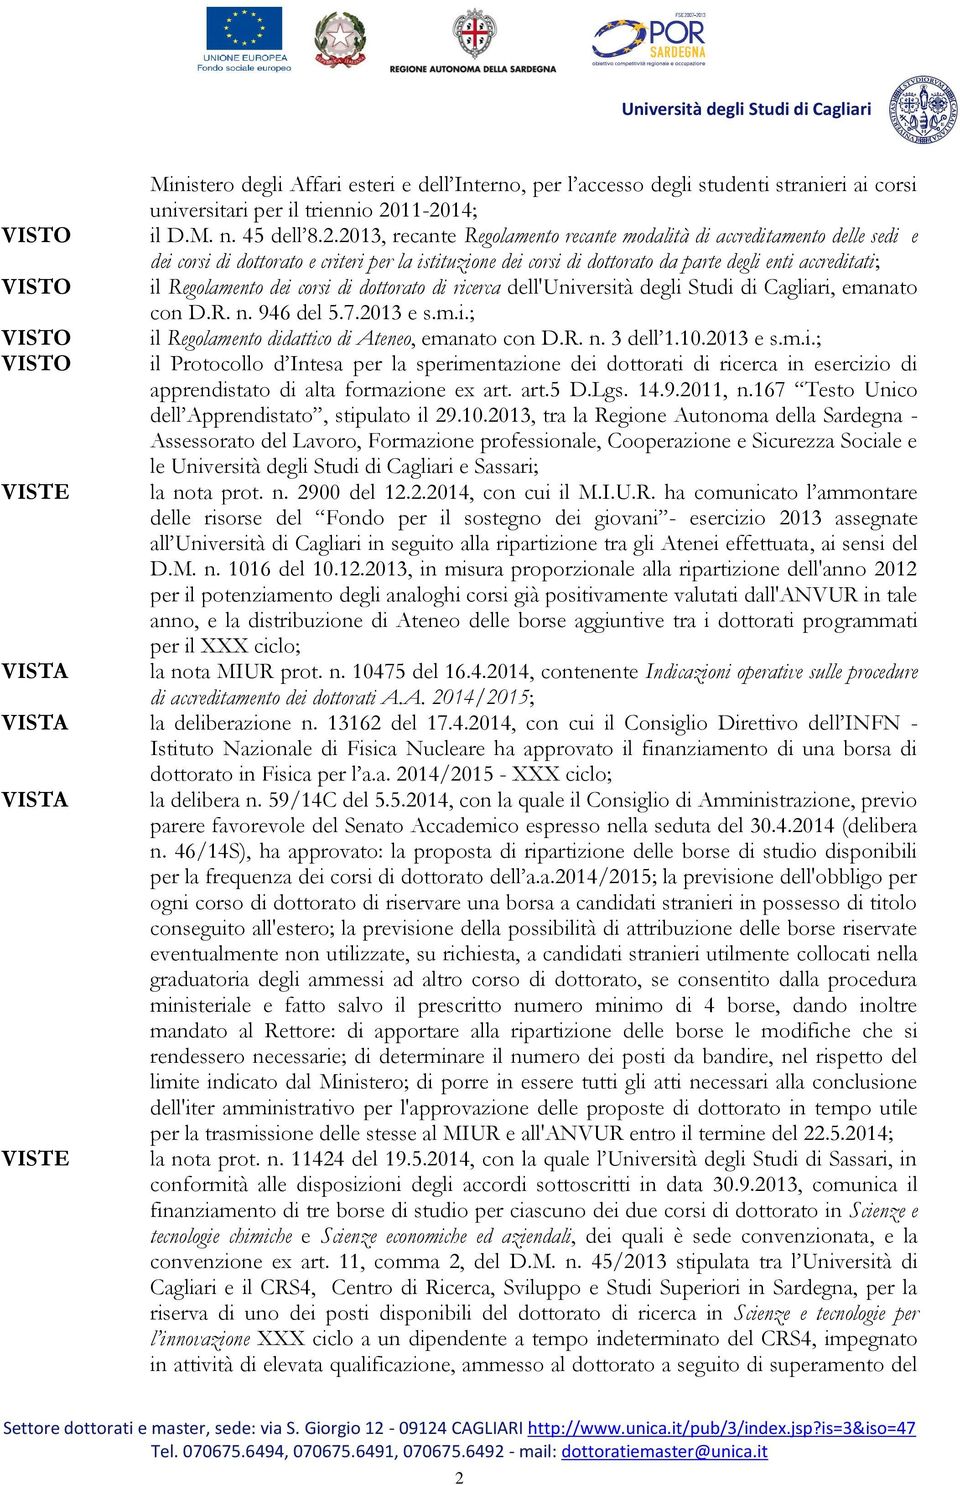 enti accreditati; il Regolamento dei corsi di dottorato di ricerca dell'università degli Studi di Cagliari, emanato con D.R. n. 946 del 5.7.2013 e s.m.i.; il Regolamento didattico di Ateneo, emanato con D.